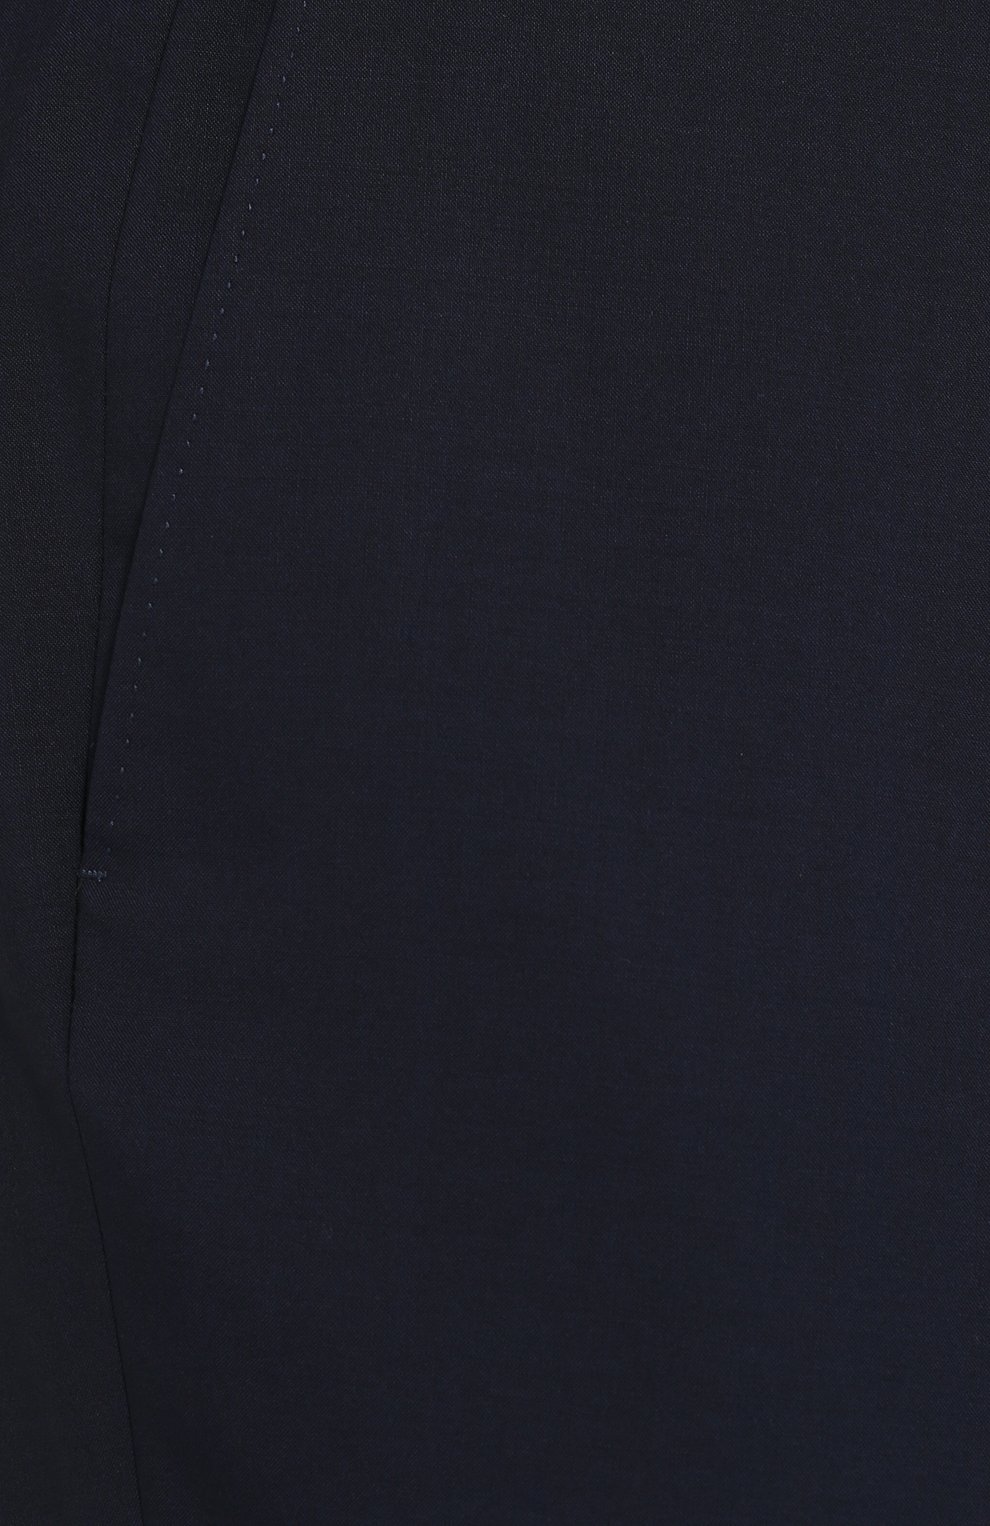 Мужские шерстяные брюки CANALI темно-синего цвета, арт. 71012/AT00552/60-64 | Фото 5 (Материал внешний: Шерсть; Big photo: Big photo; Длина (брюки, джинсы): Стандартные; Стили: Классический; Случай: Формальный)